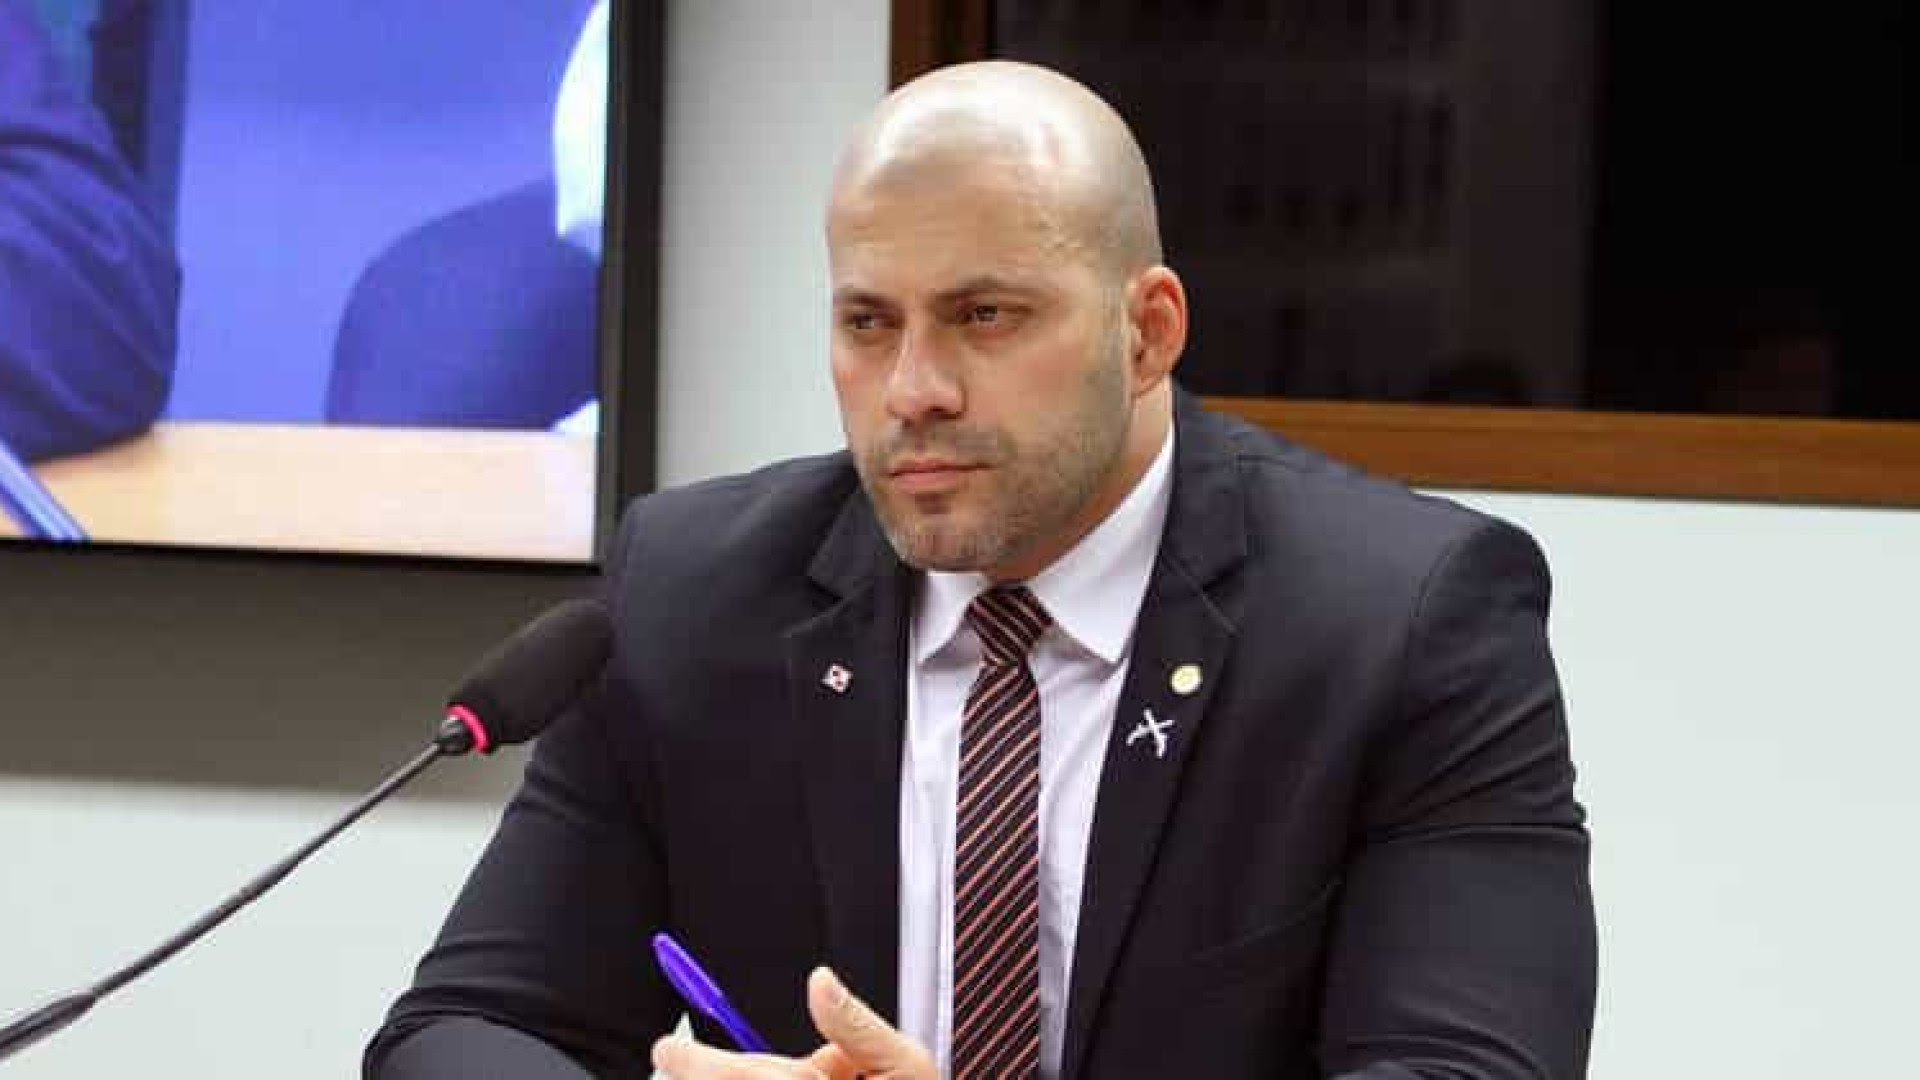 STF manda prender deputado Daniel Silveira após ataques a ministros da corte